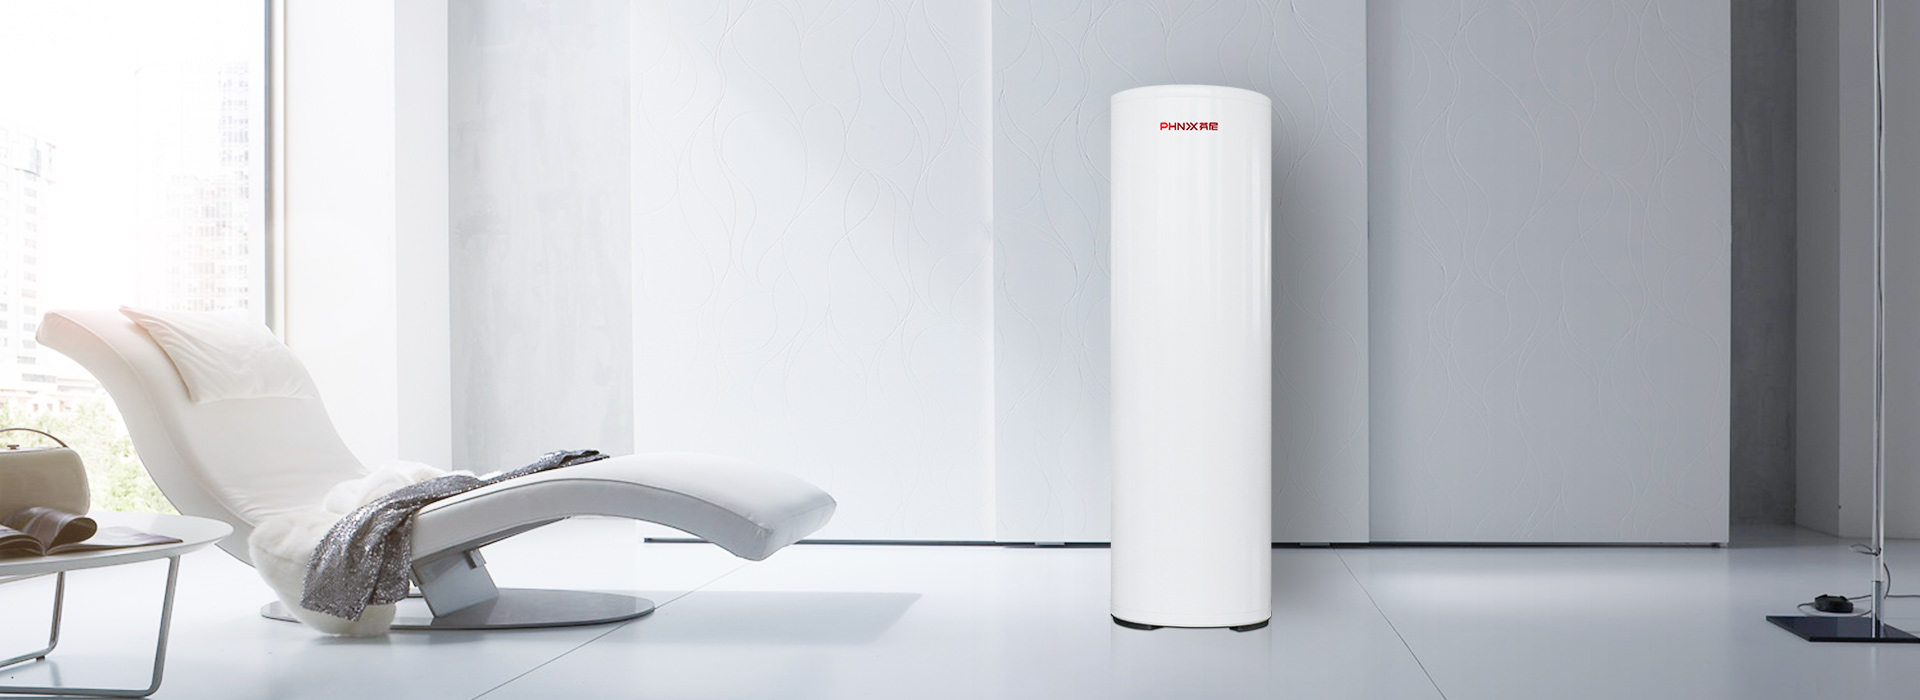 芬尼空气能热水器精英型300L亮丽白色设计，时尚外观